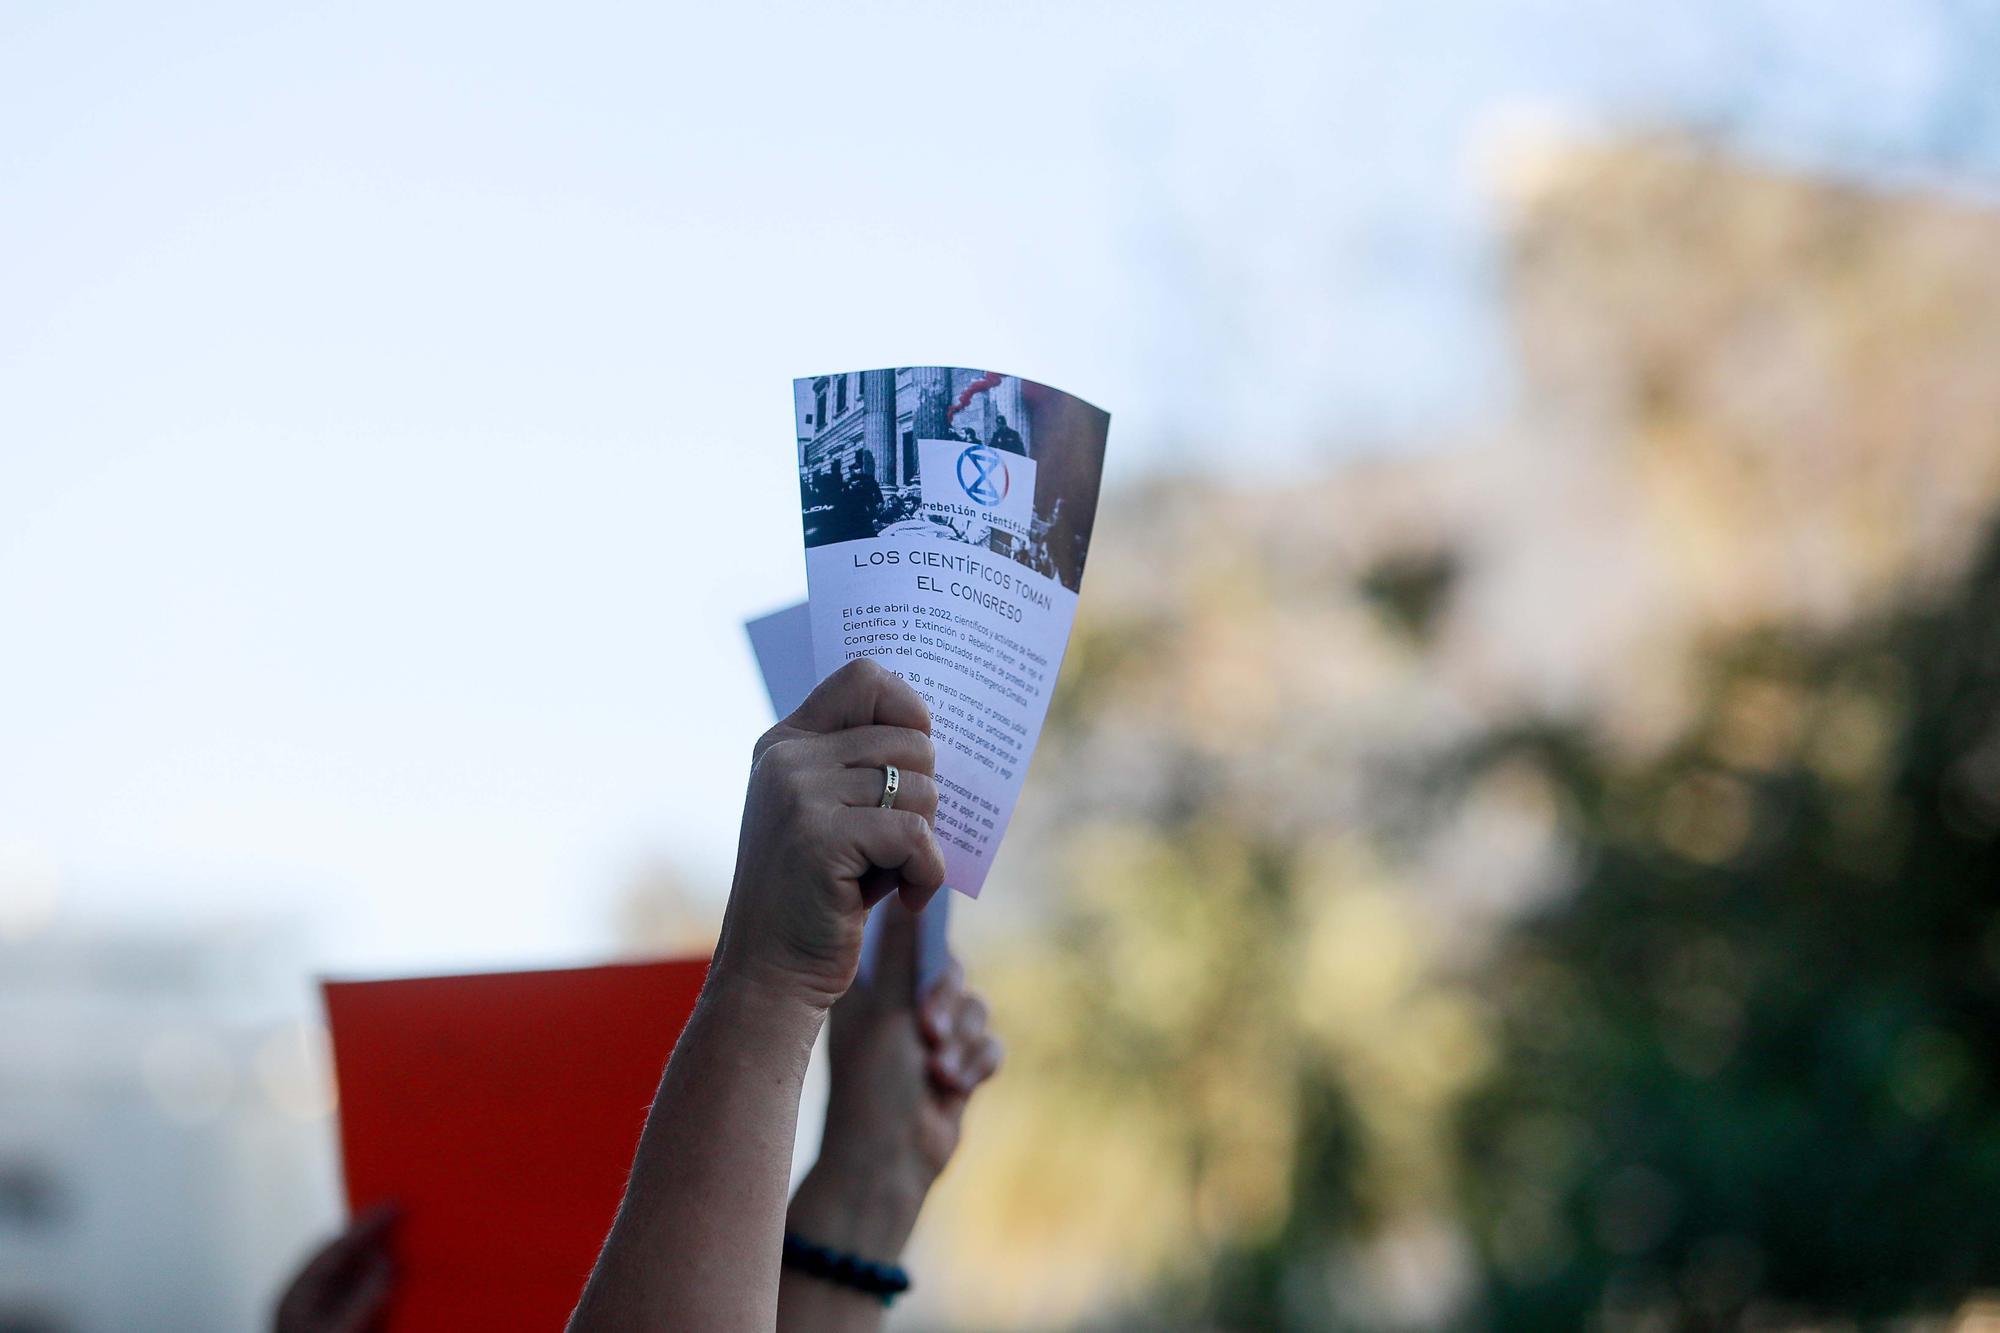 Galería de imágenes de la protesta de 'Eivissa es rebel·la' frente a los juzgados de Ibiza